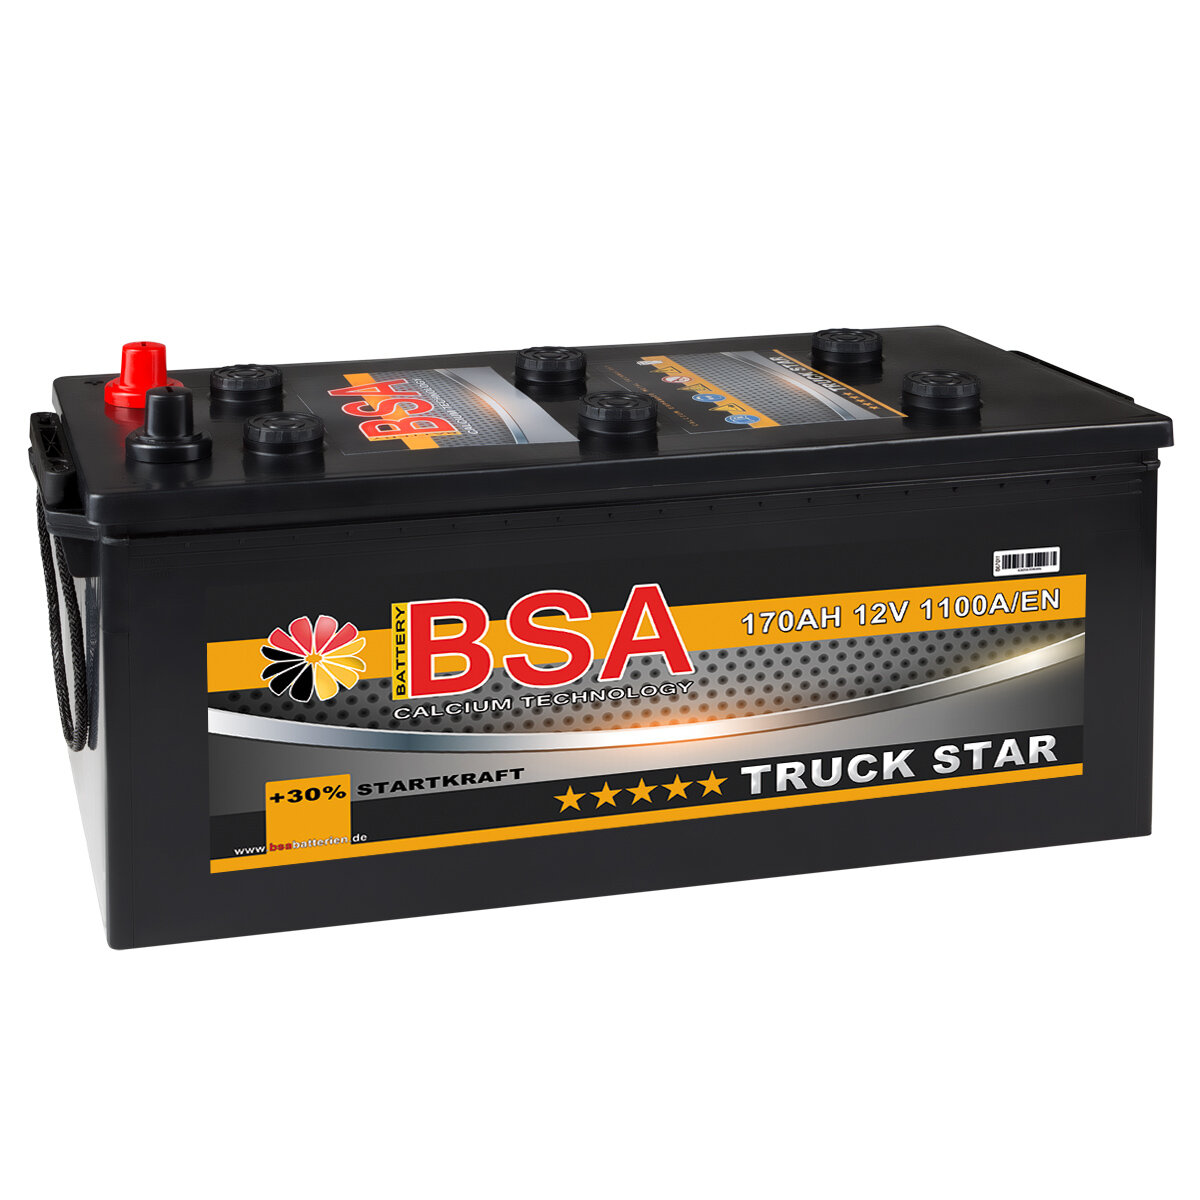 BSA Truck Star LKW Batterie 170Ah 12V, 173,90 €